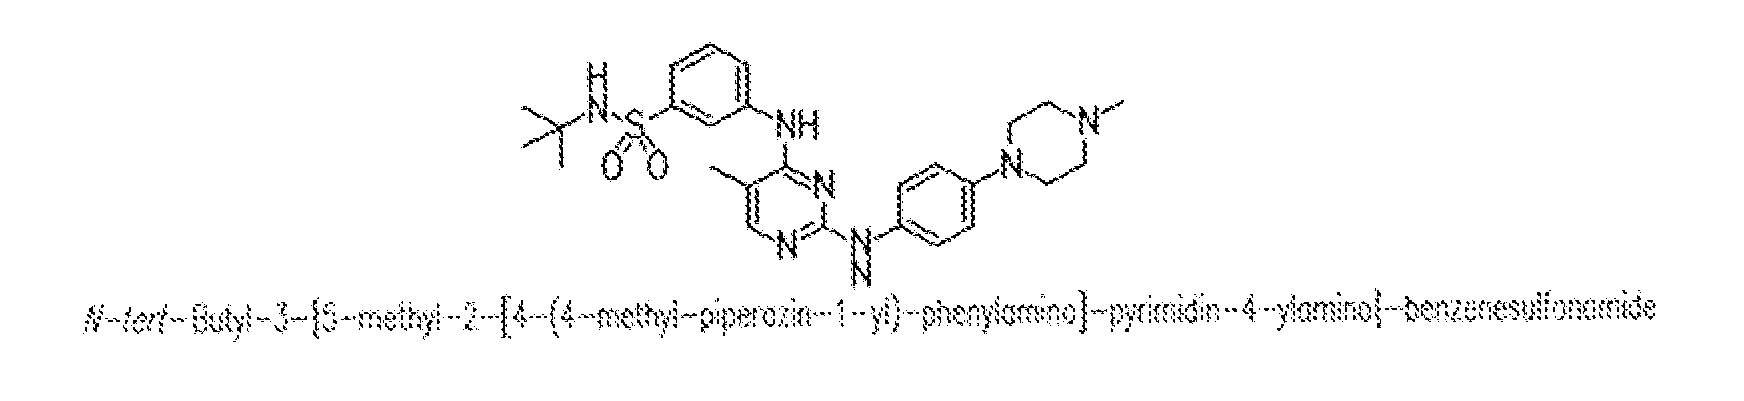 Bi-aryl meta-pyrimidine inhibitors of kinases